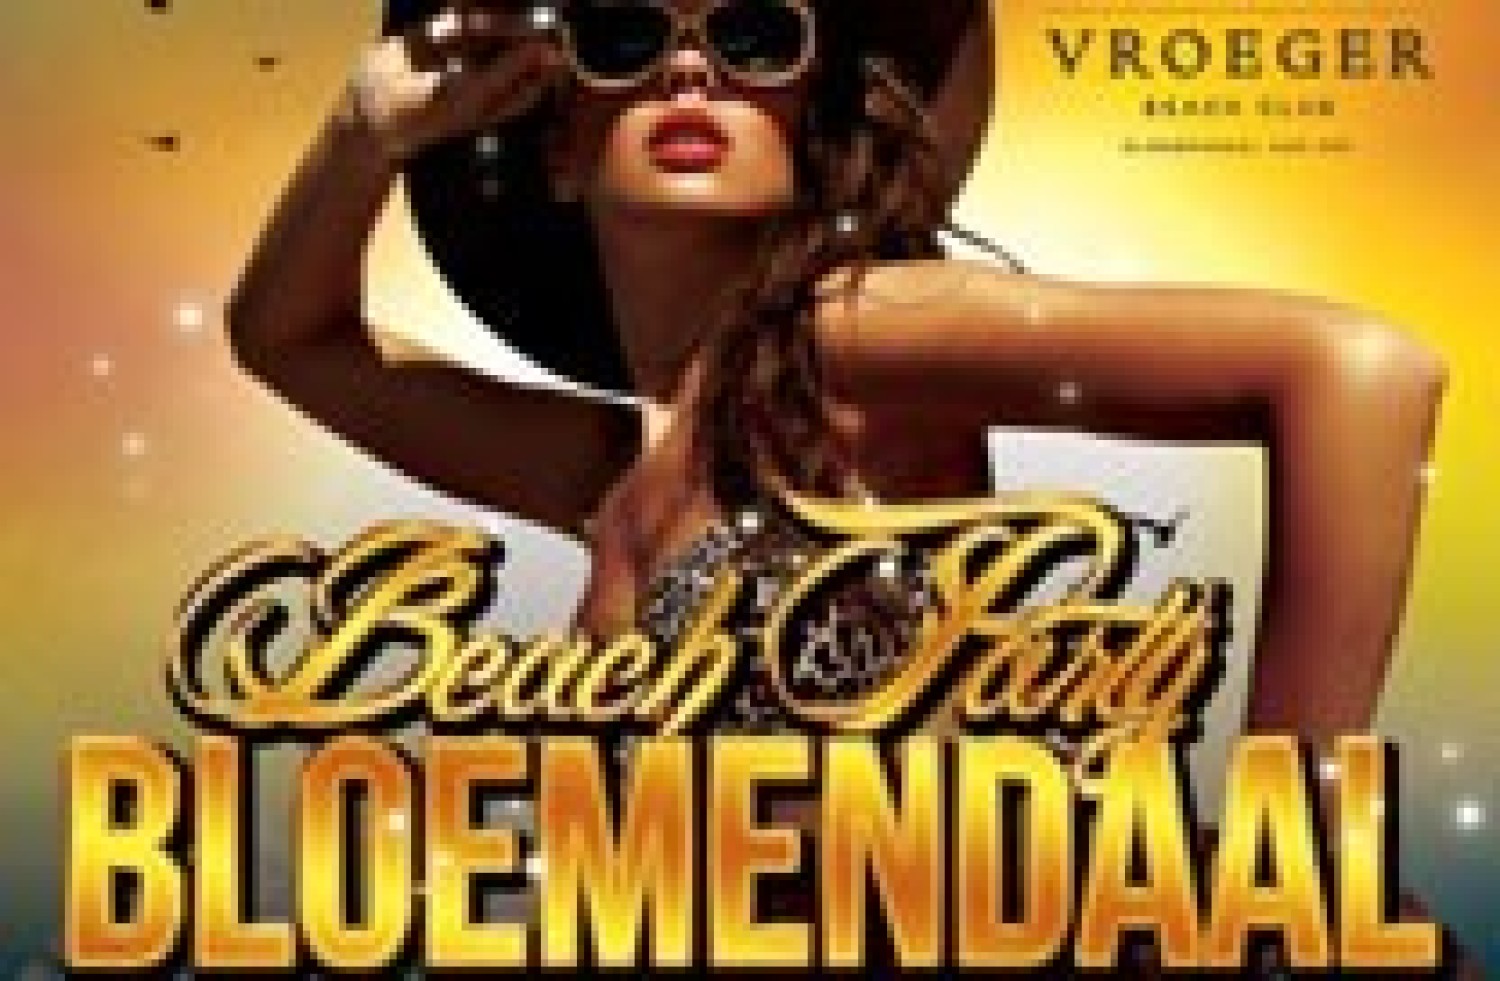 Party nieuws: Beachparty Bloemendaal - 26 mei - Beachclub Vroeger